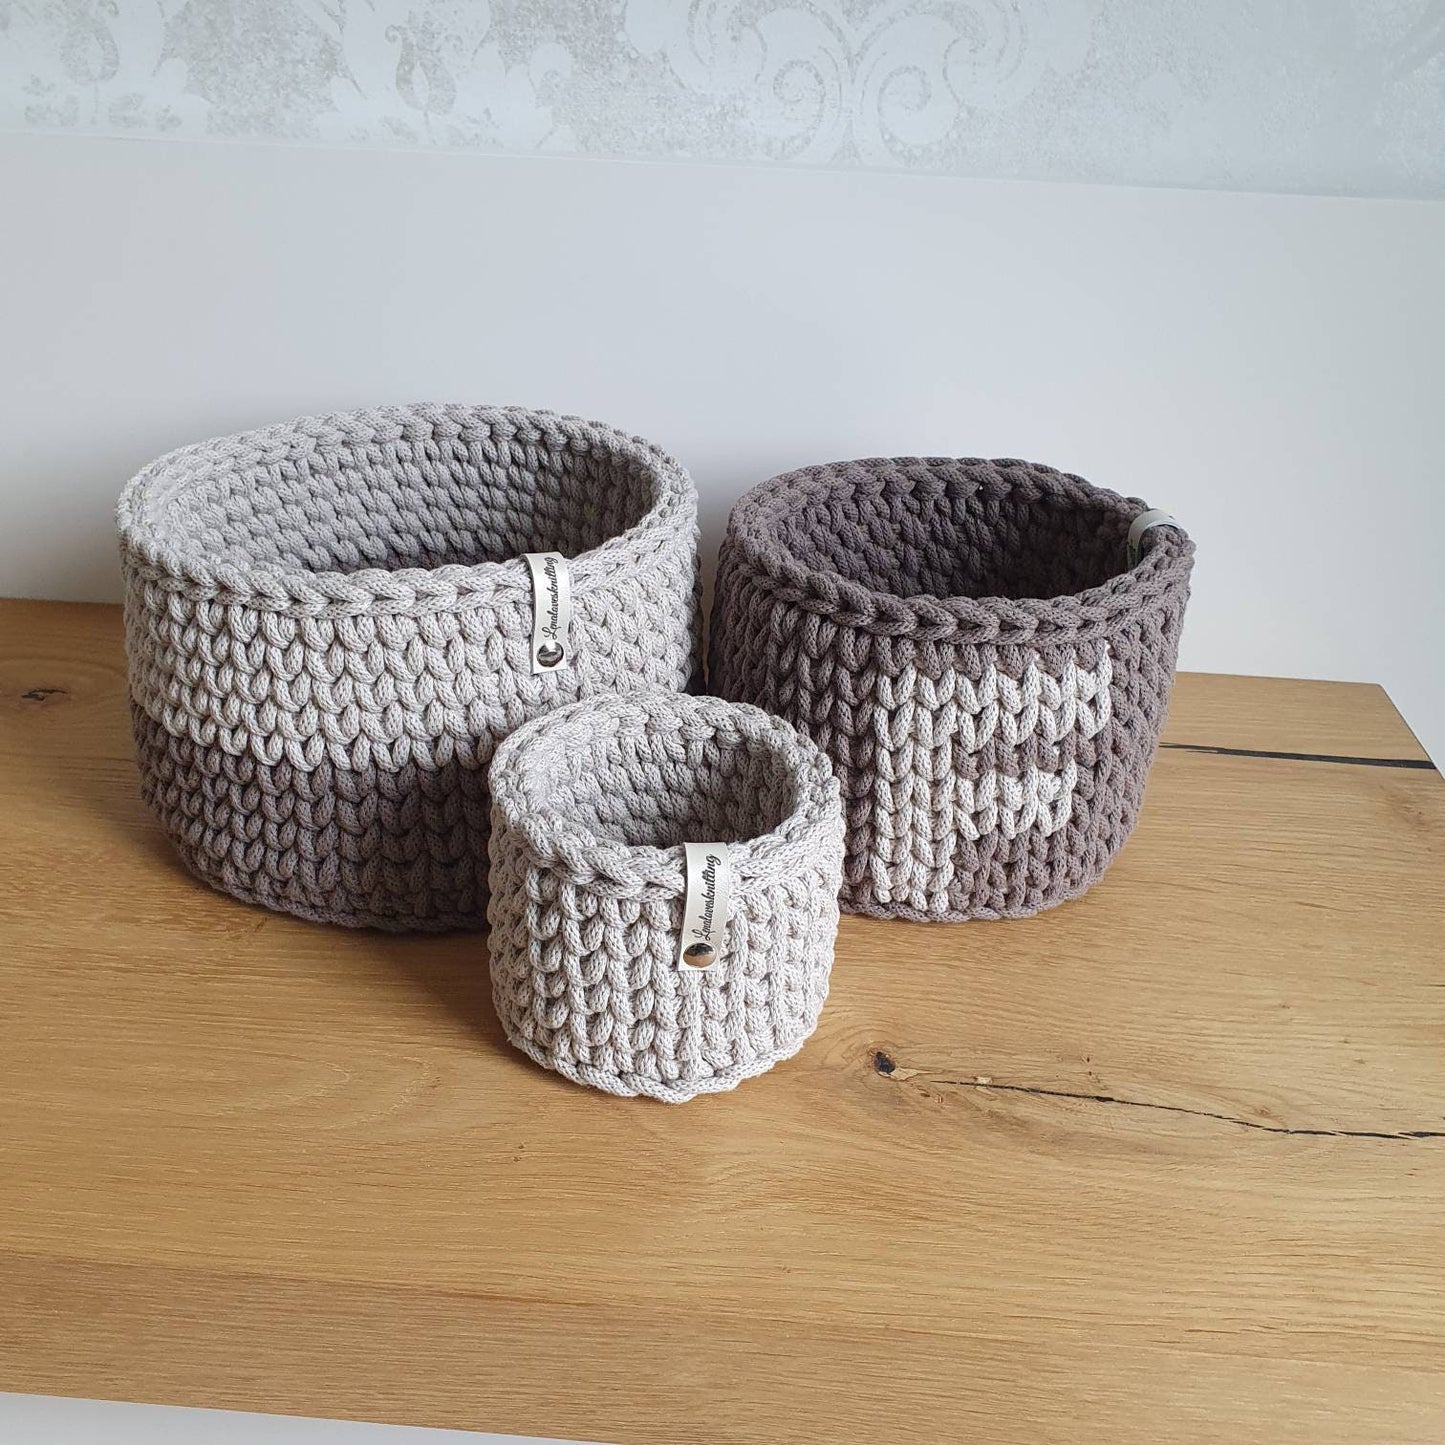 Conjunto de 3 cestas tejidas a ganchillo con cordón de algodón idea de regalo baby shower